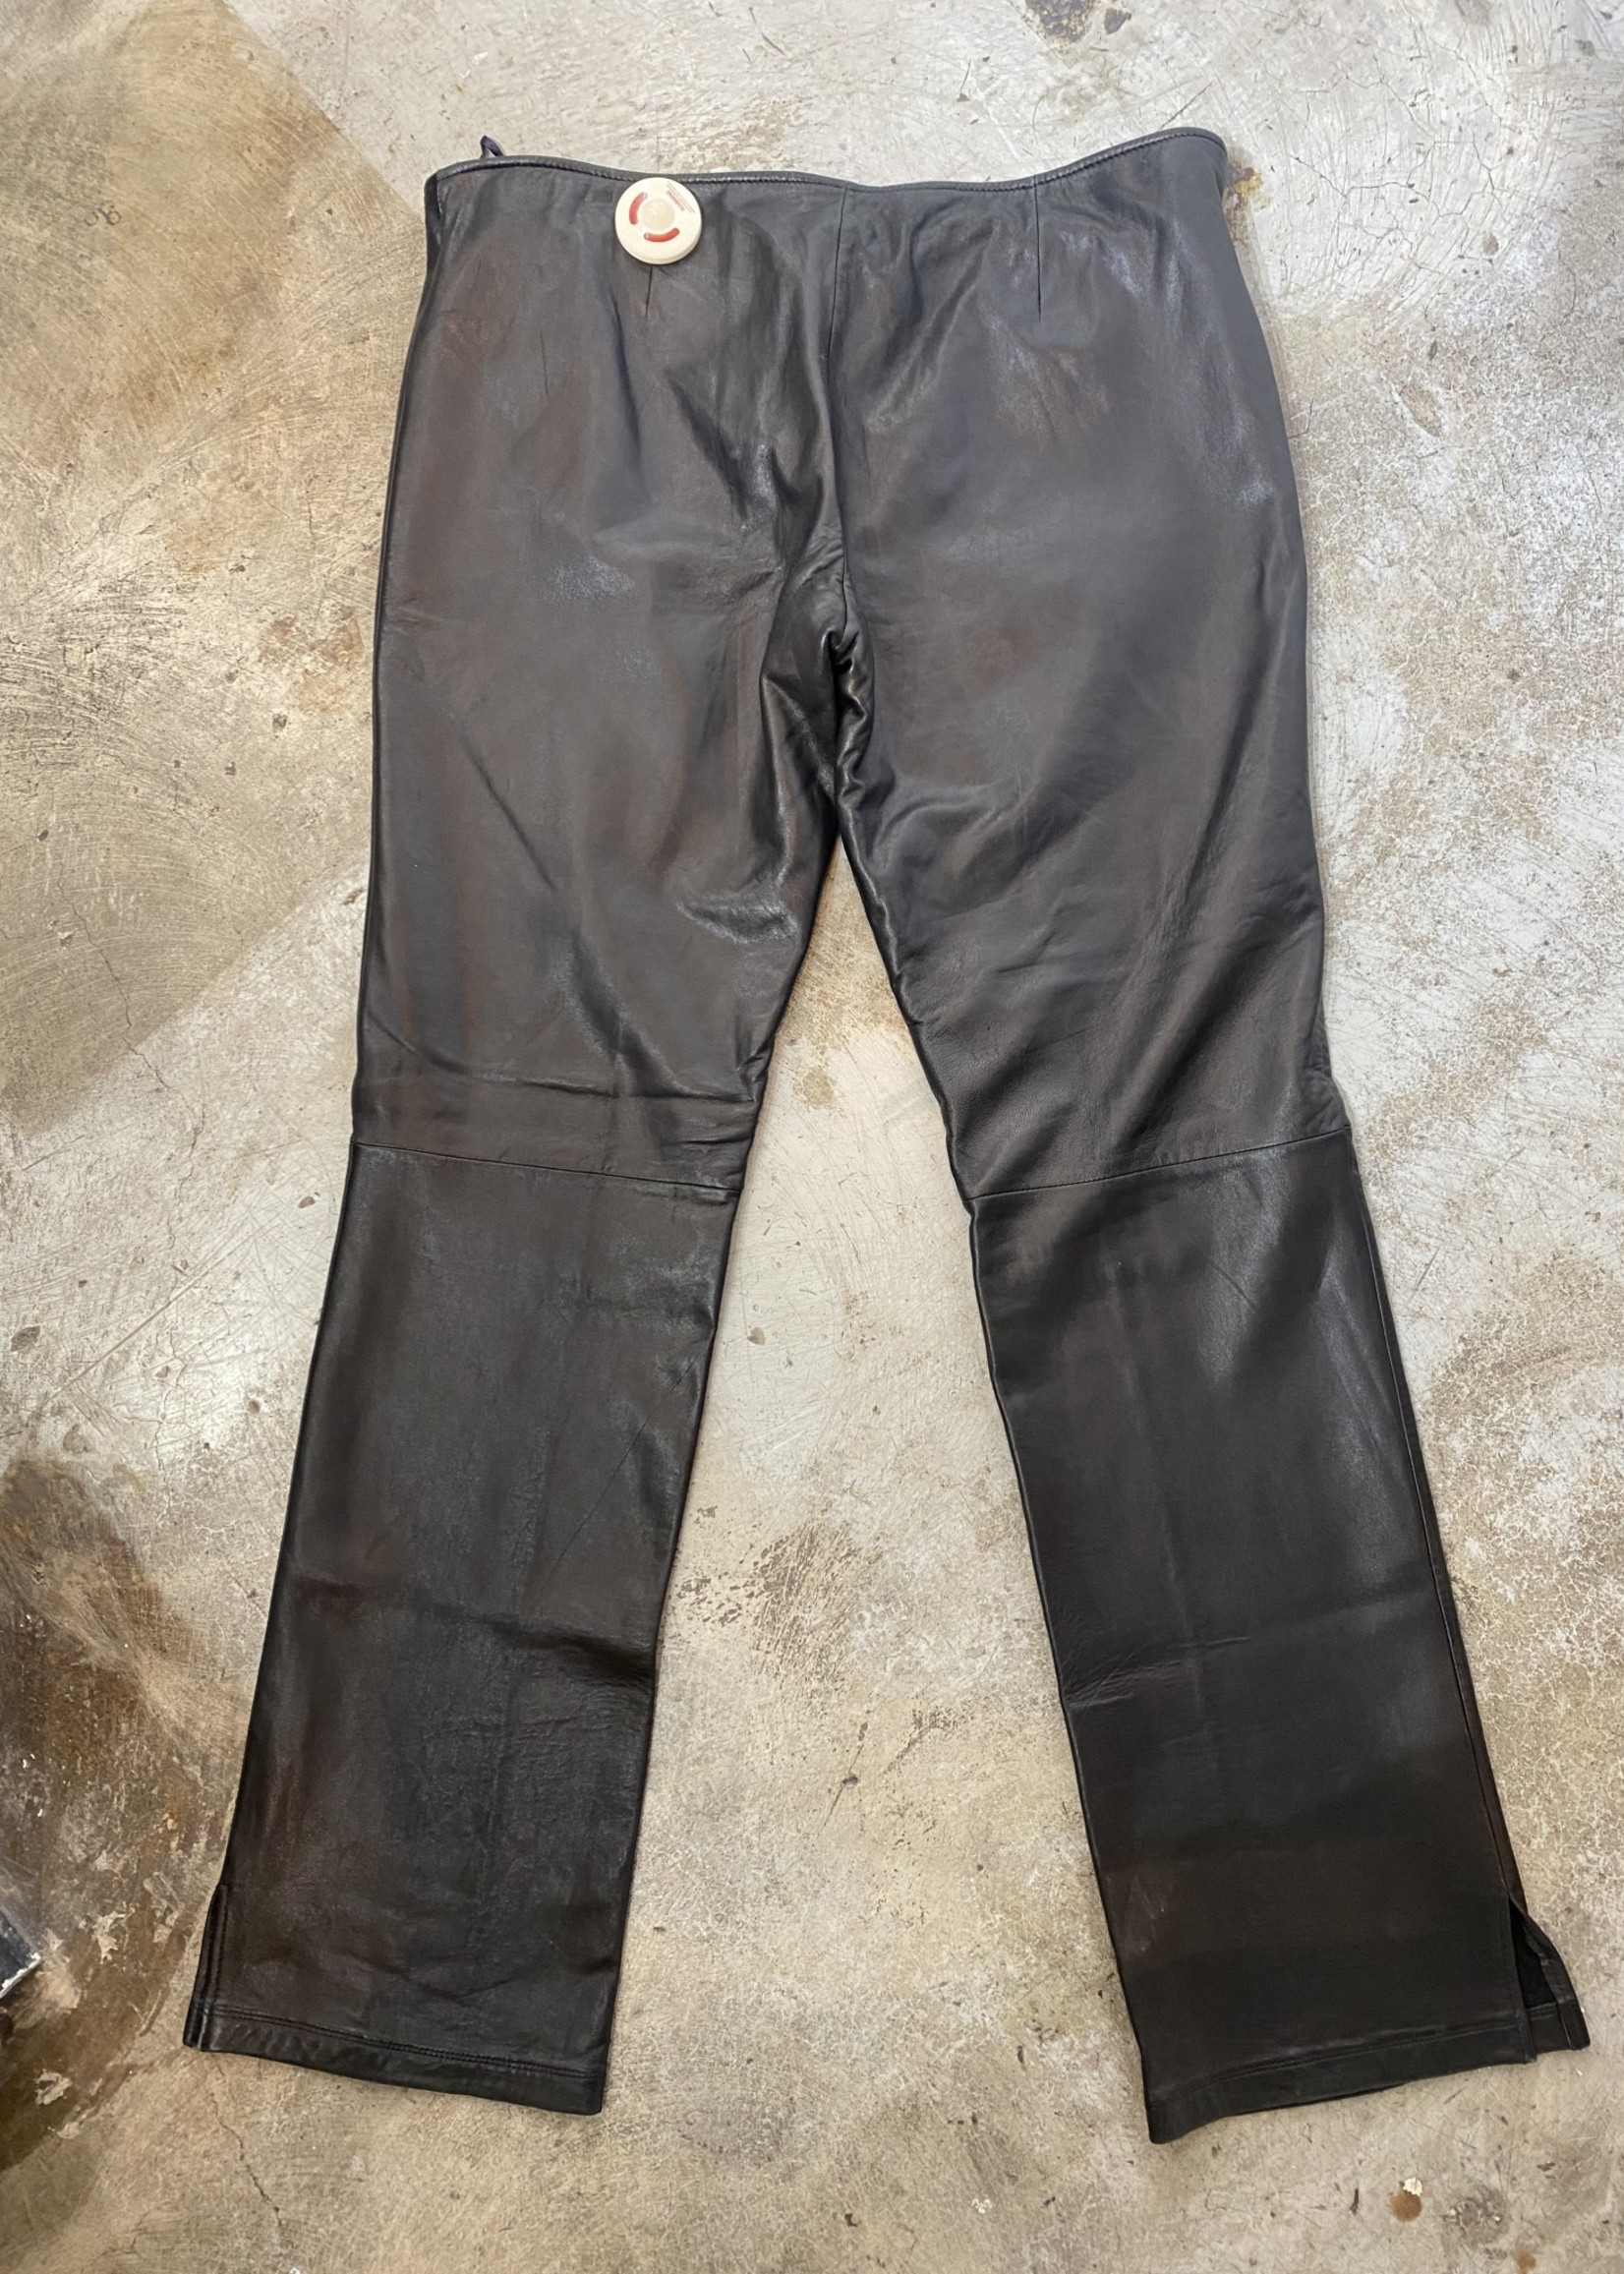 Lobi Lobi Vintage Black Leather Flare Pants FEM14/34